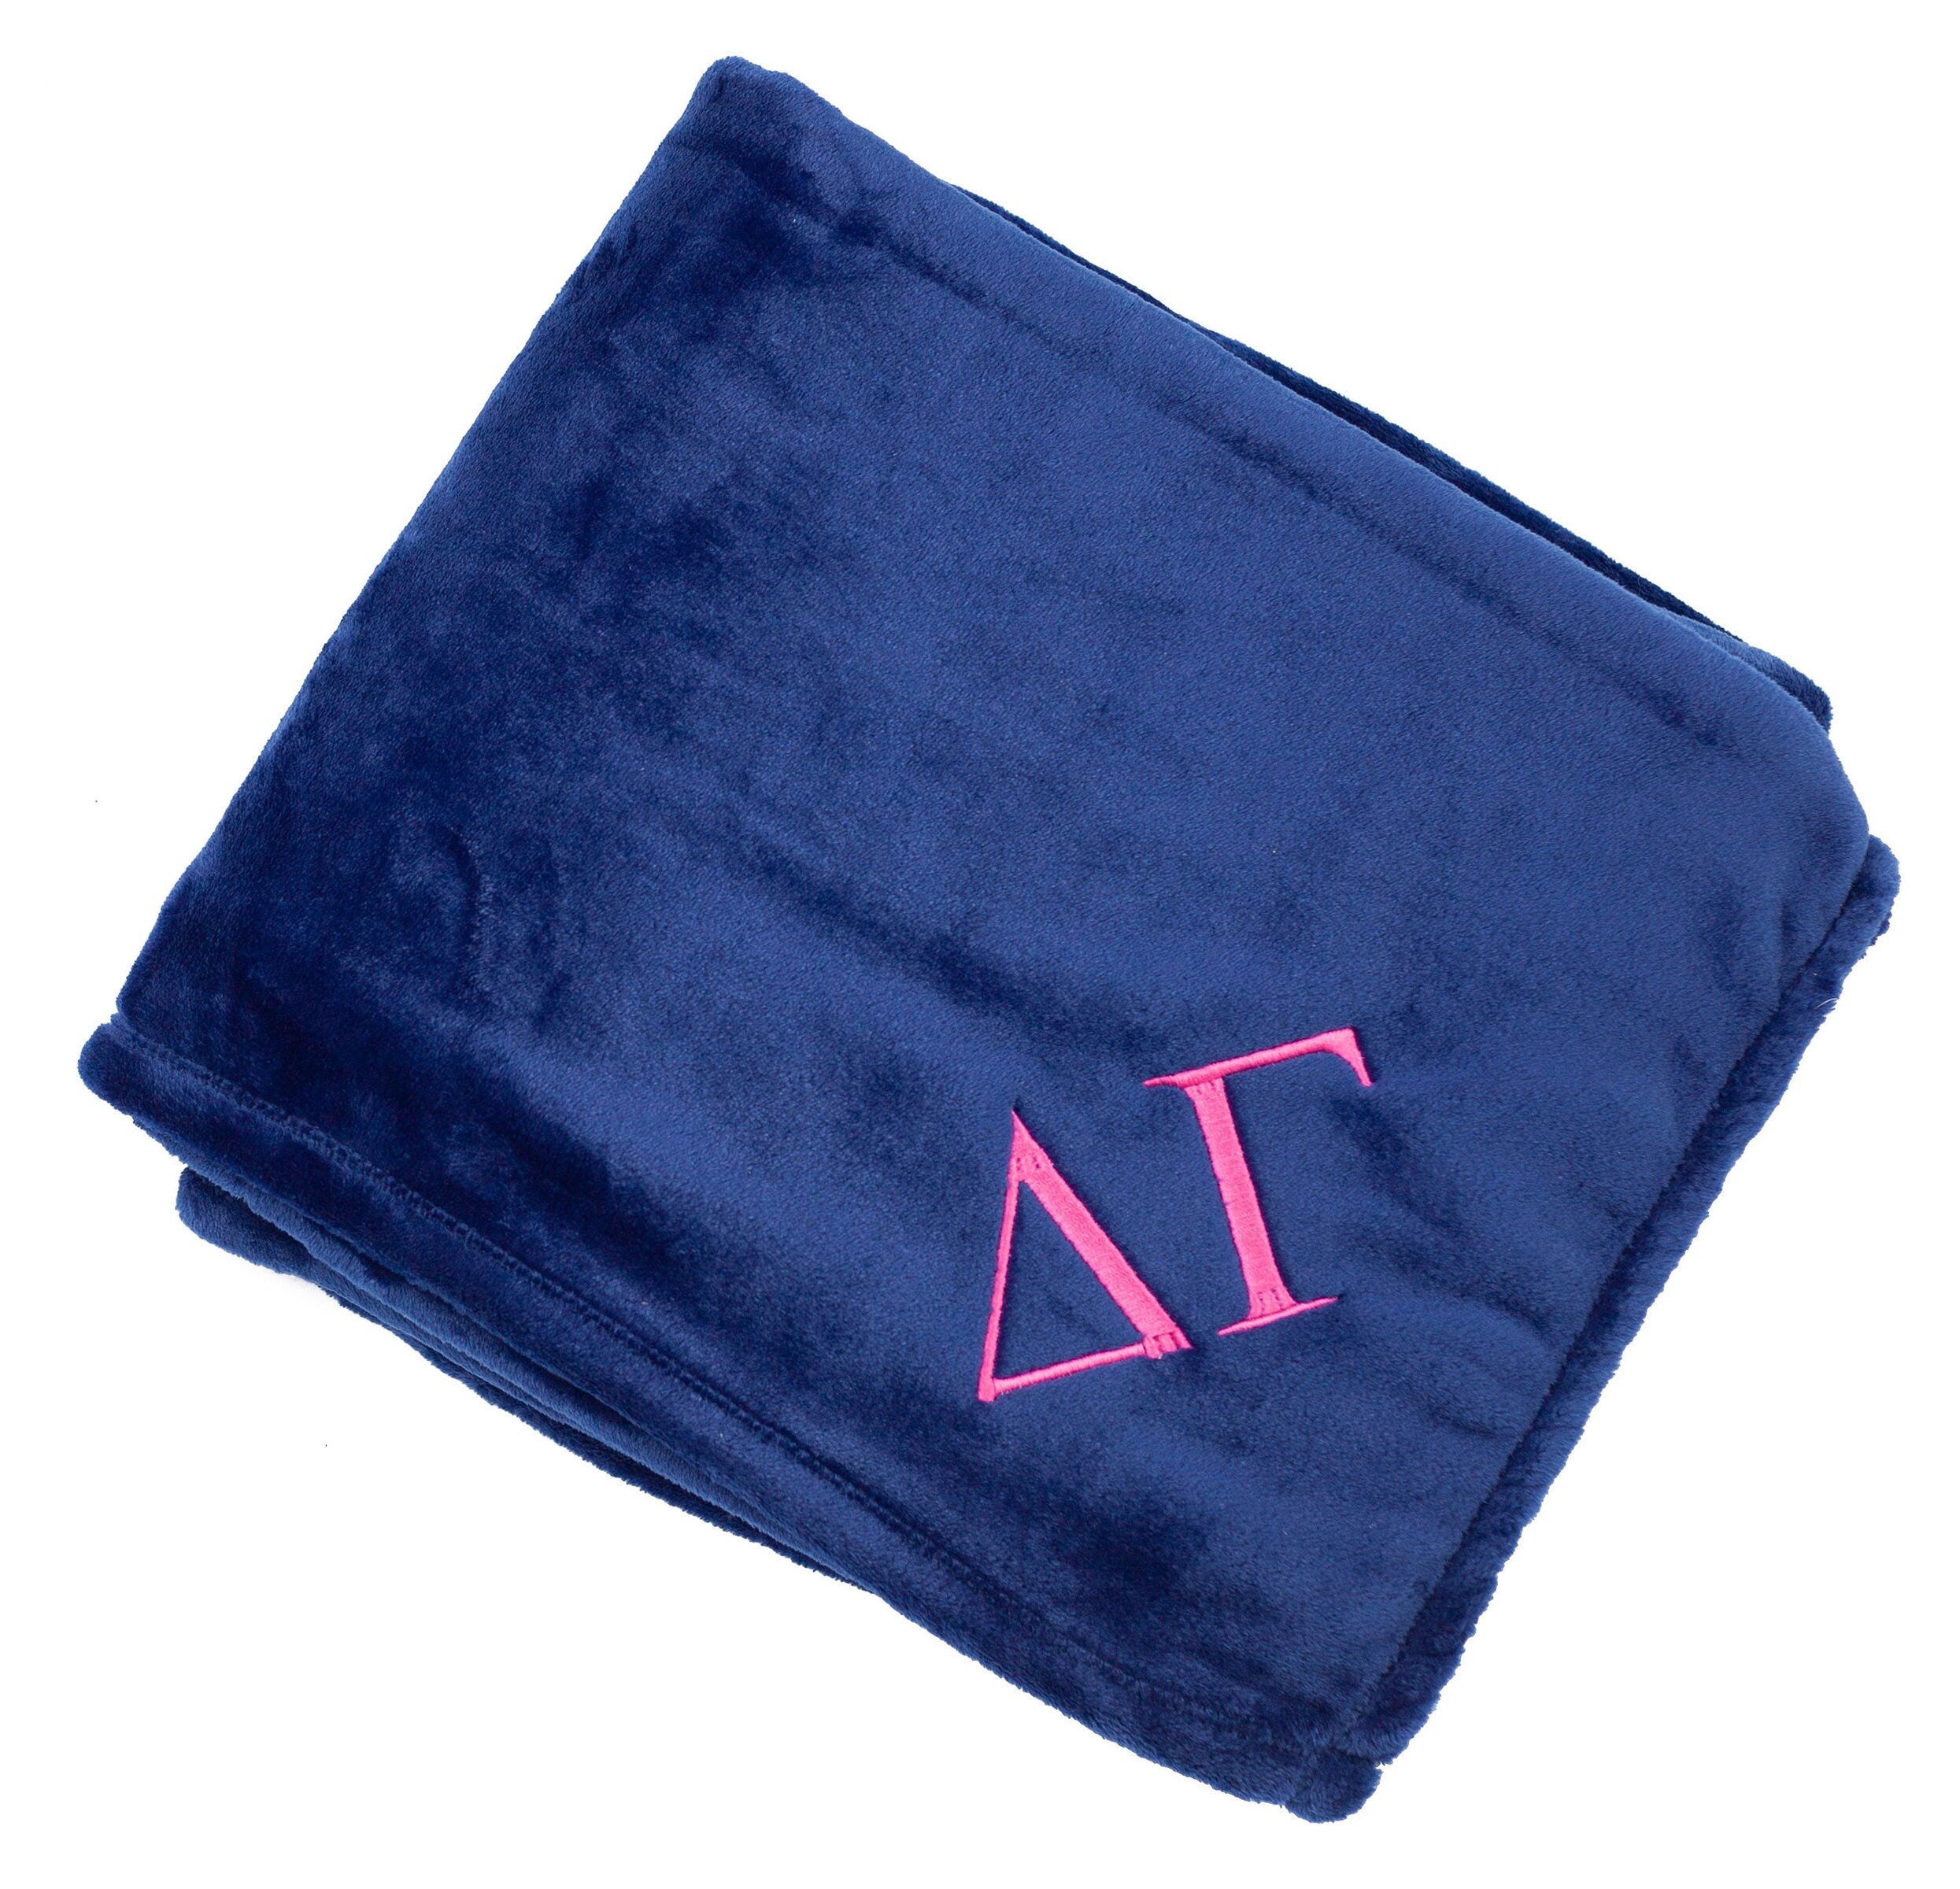 Delta Gamma Plush Throw Blanket - Navy/Pink - Go Greek Chic